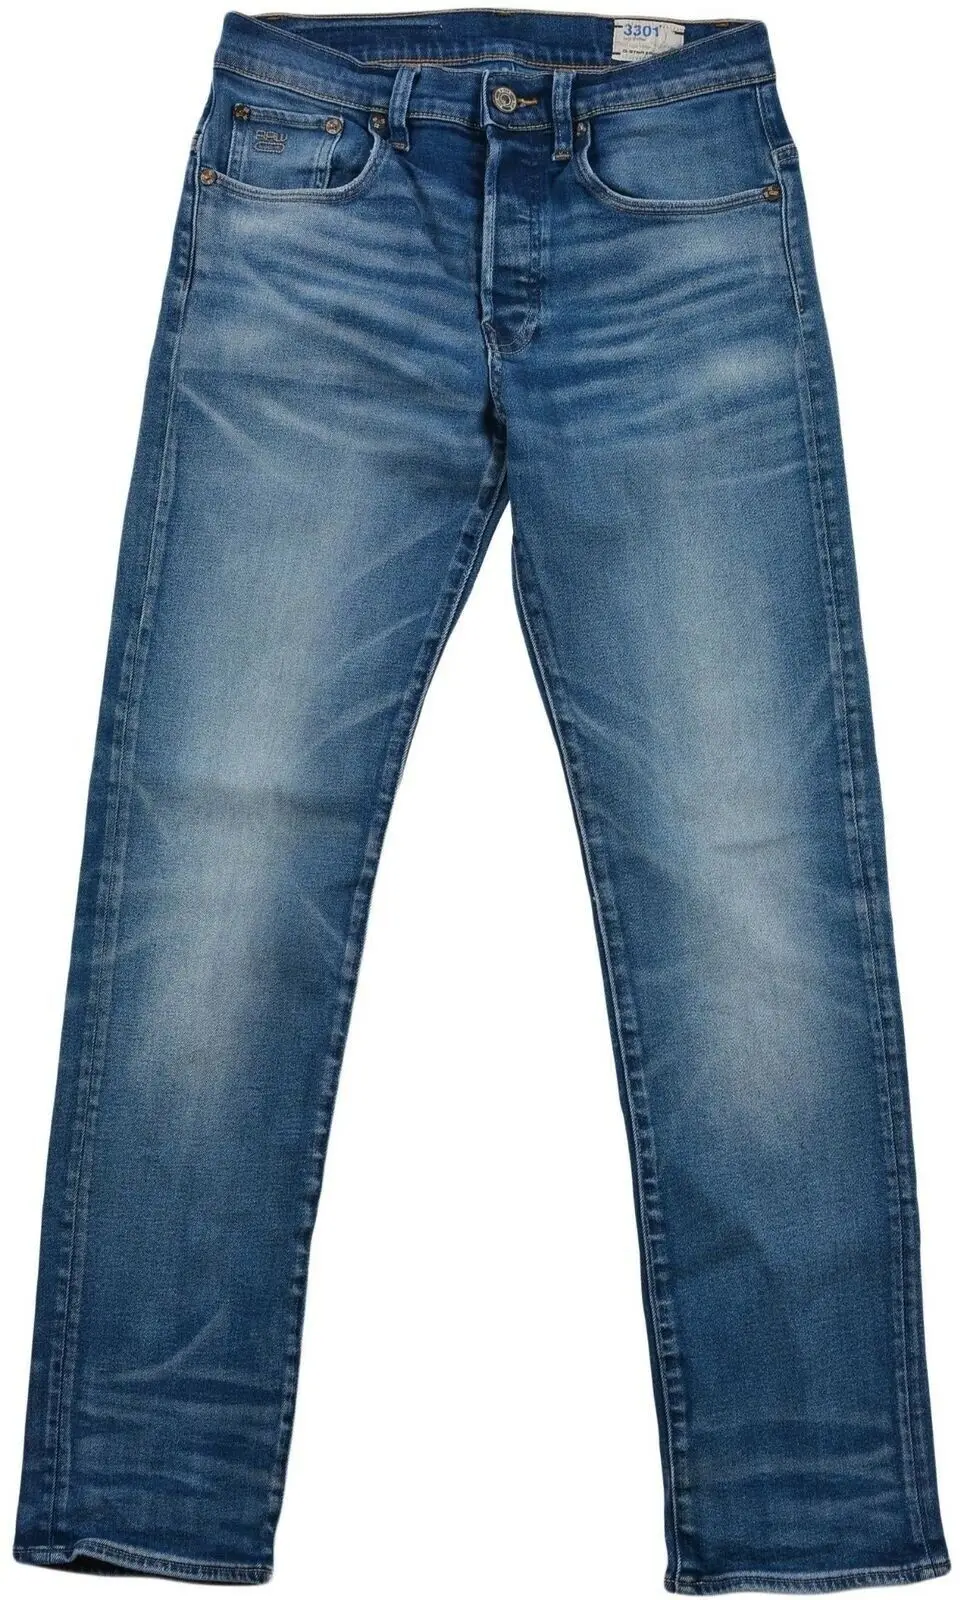 Men Fashion Plain Pockets Cargo Pants Jeans Casual Trousers Slim Fit ...